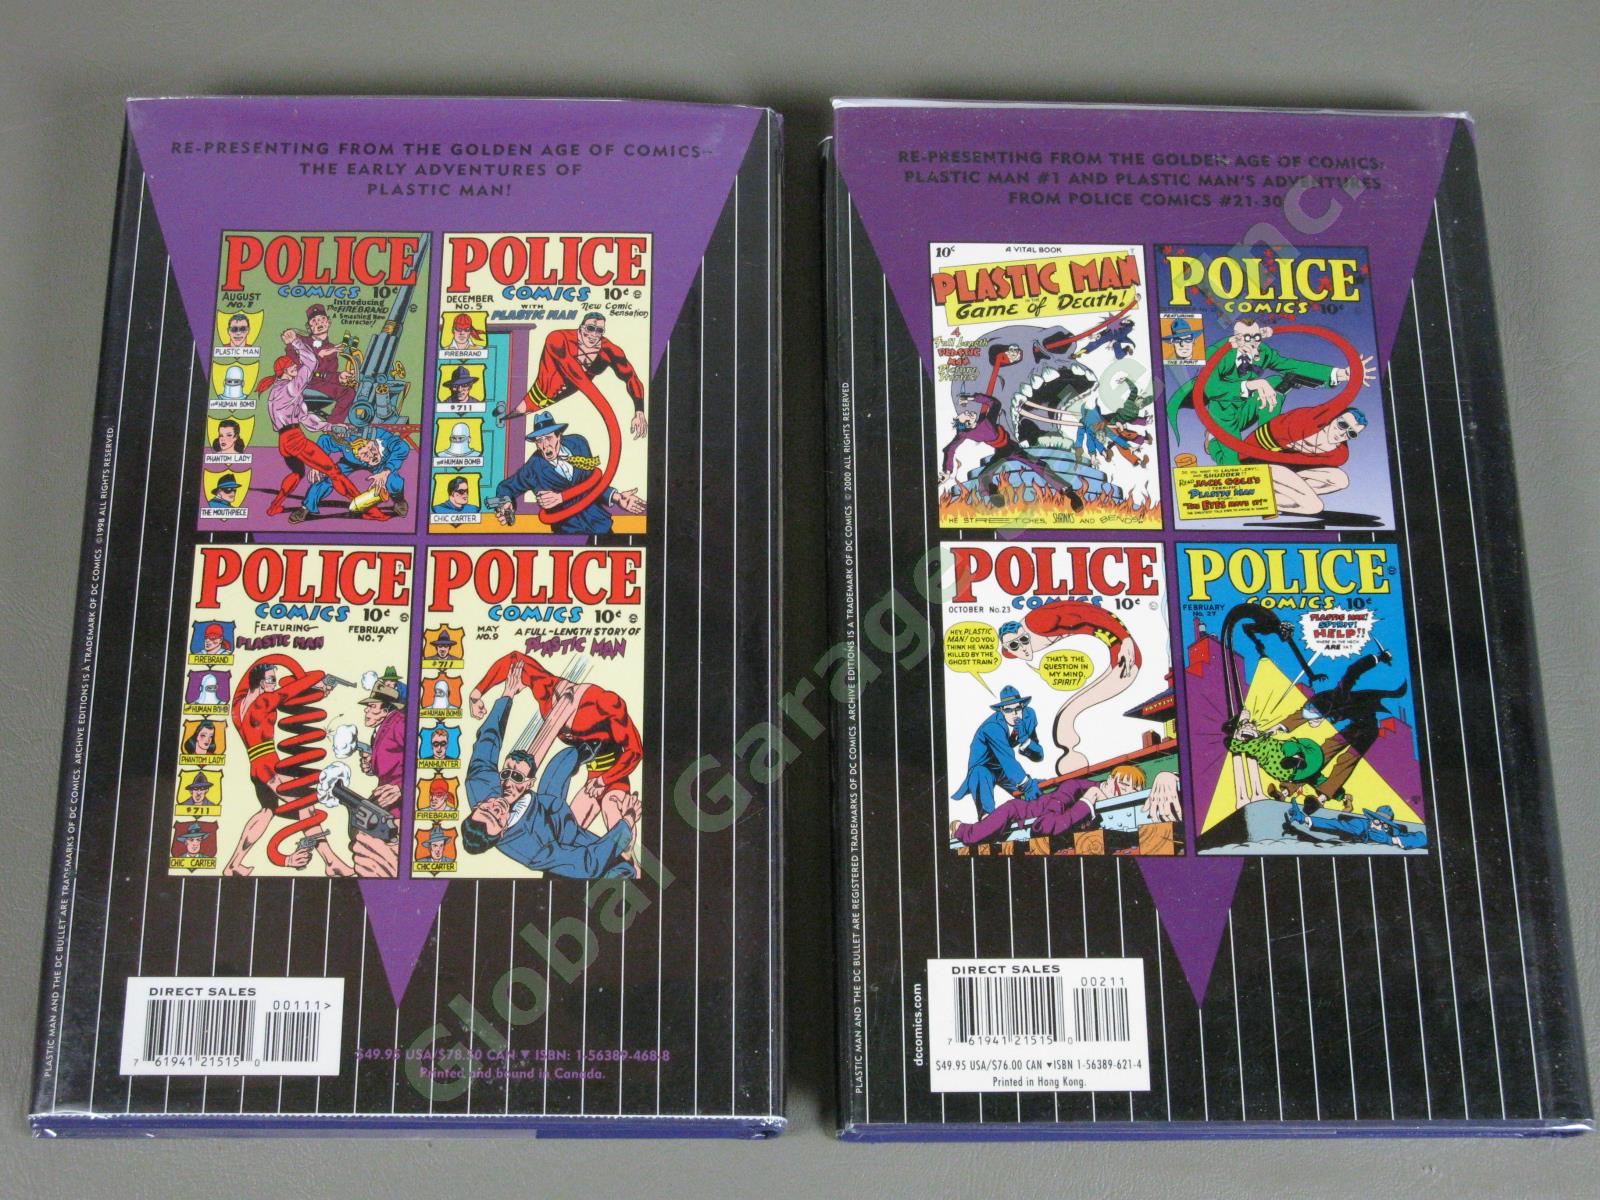 NEW DC Archives Plastic Man Volumes 1-8 Complete Comic Book Set Jack Cole MINT 6